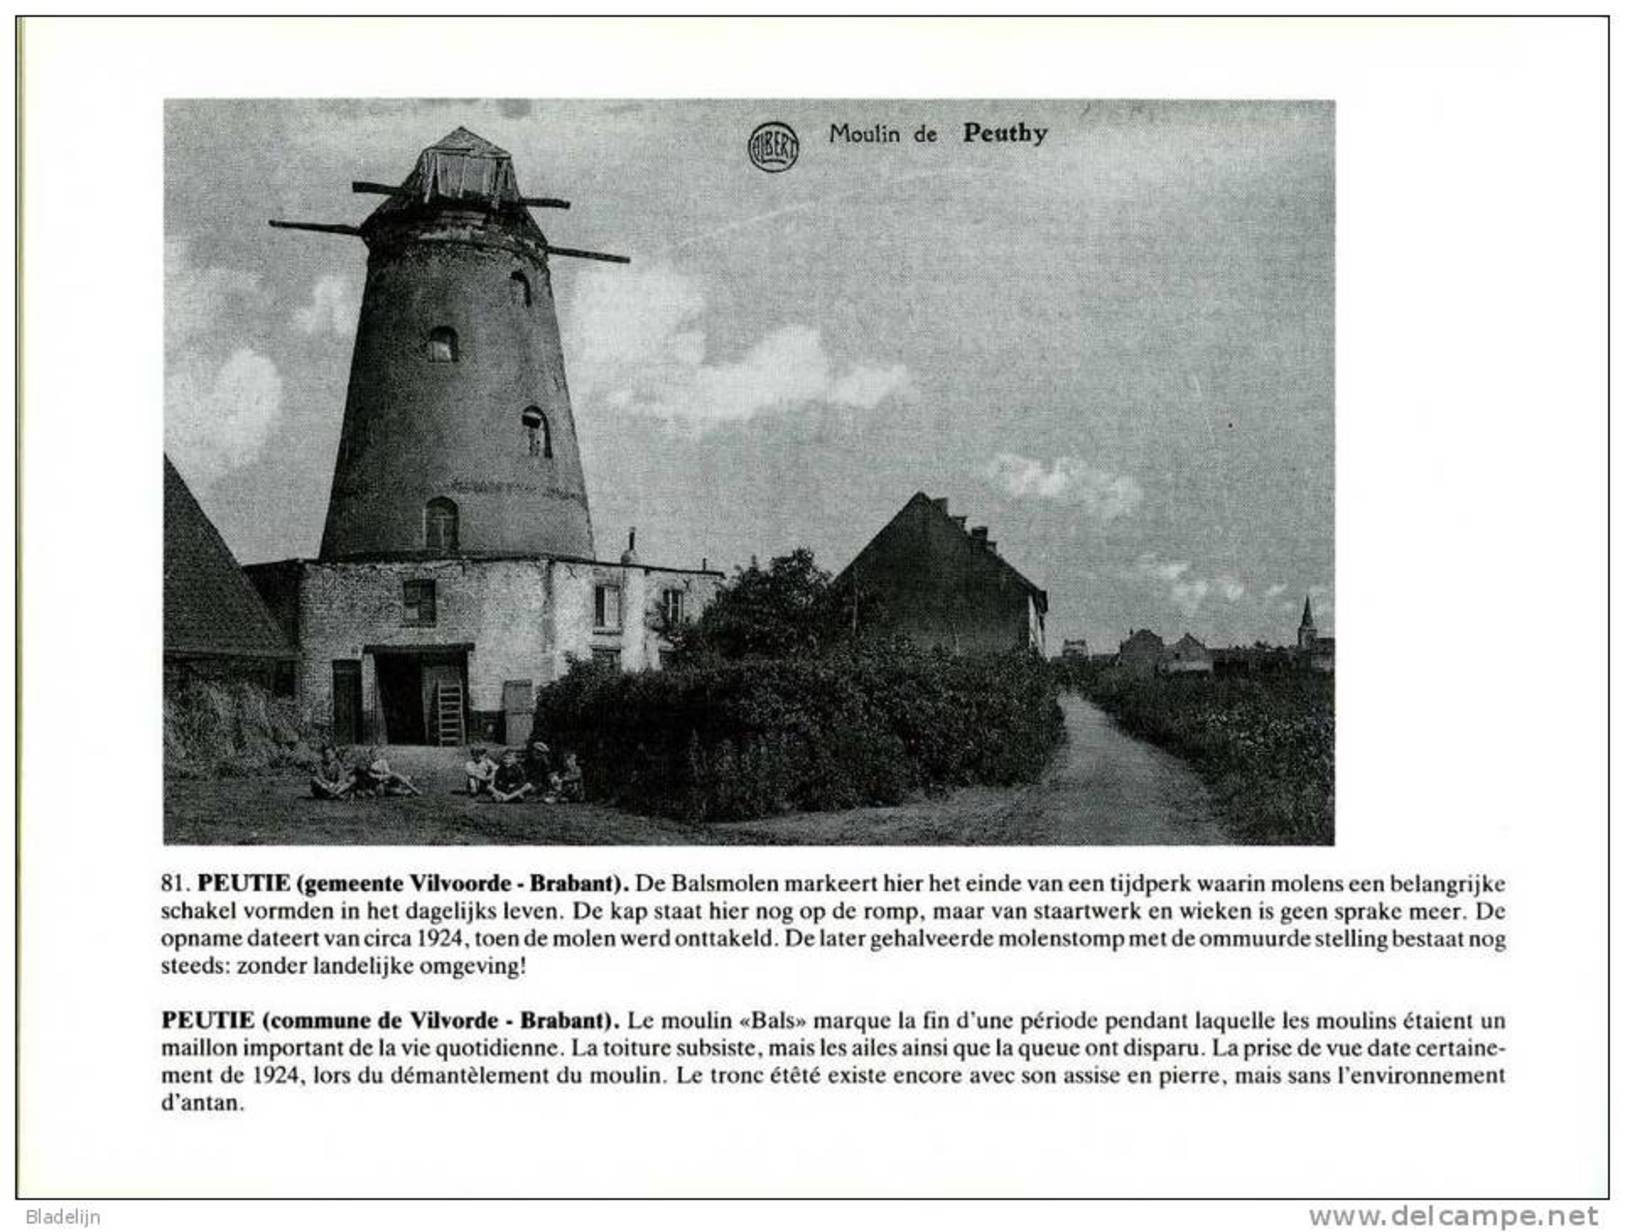 molen/moulin - BOEK: Verdwenen Belg. windmolens in oude prentkaarten / Moulins à vent belges disparus en cartes postales